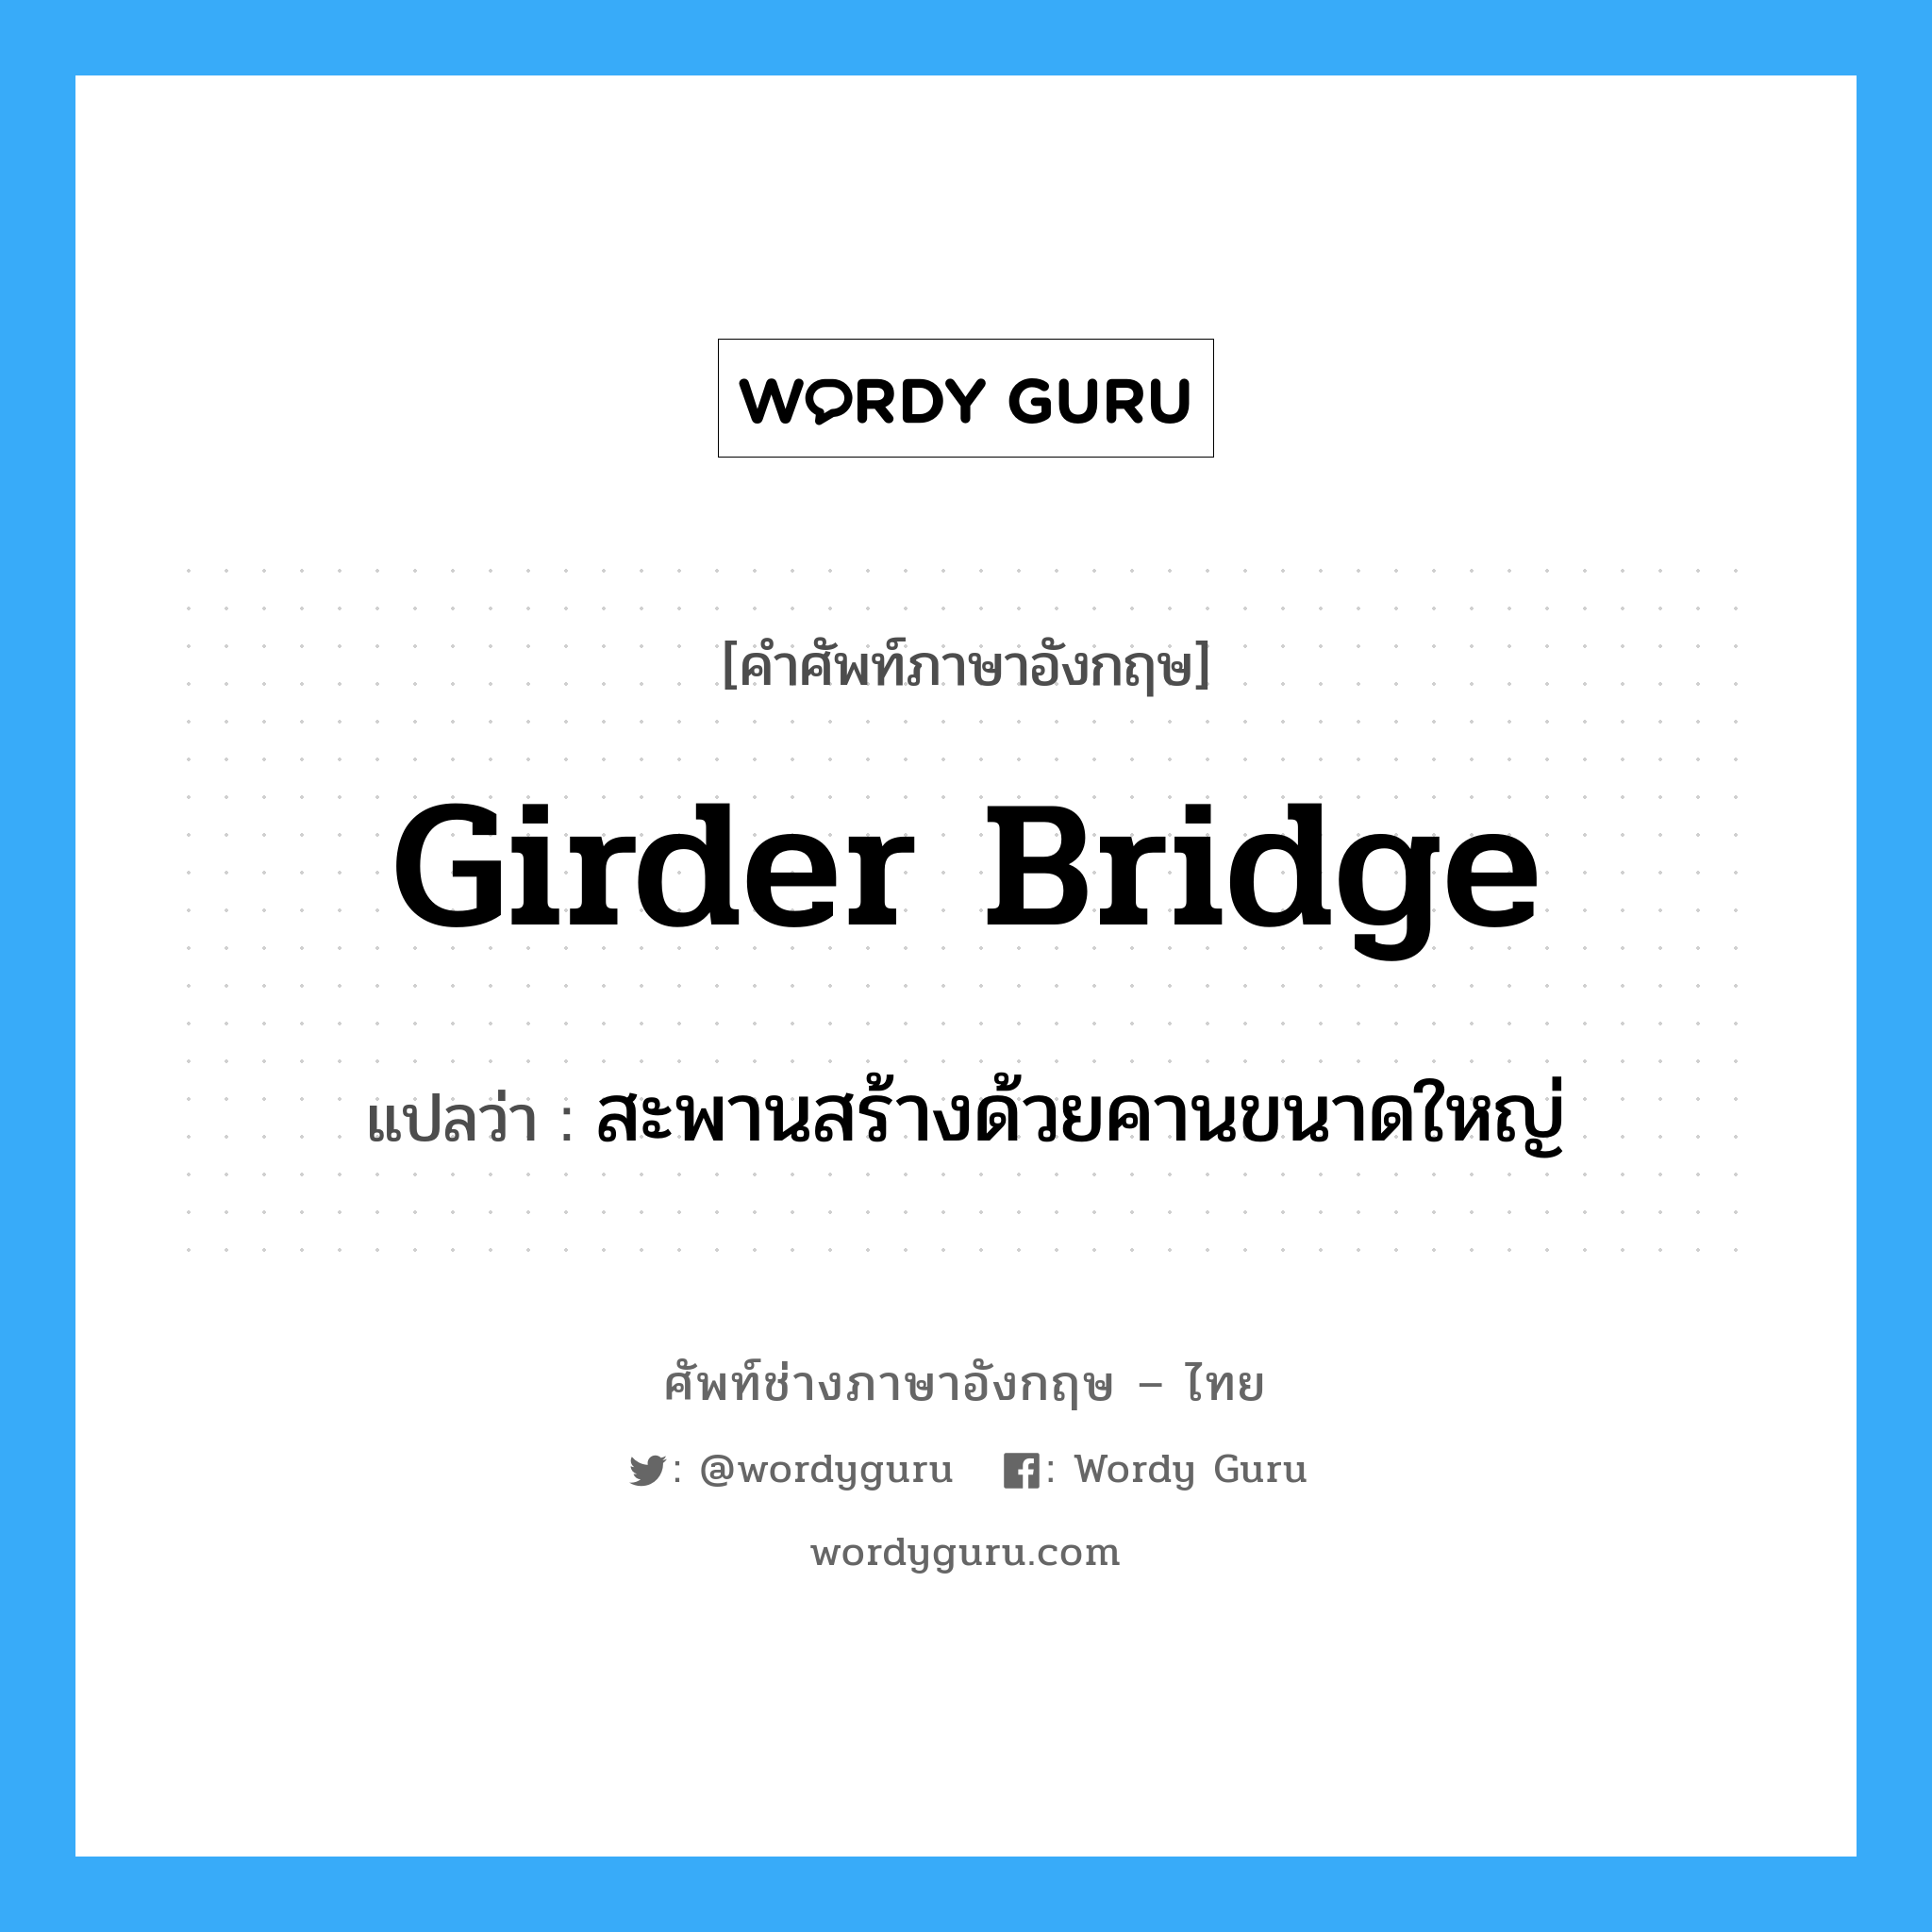 สะพานสร้างด้วยคานขนาดใหญ่ ภาษาอังกฤษ?, คำศัพท์ช่างภาษาอังกฤษ - ไทย สะพานสร้างด้วยคานขนาดใหญ่ คำศัพท์ภาษาอังกฤษ สะพานสร้างด้วยคานขนาดใหญ่ แปลว่า girder bridge